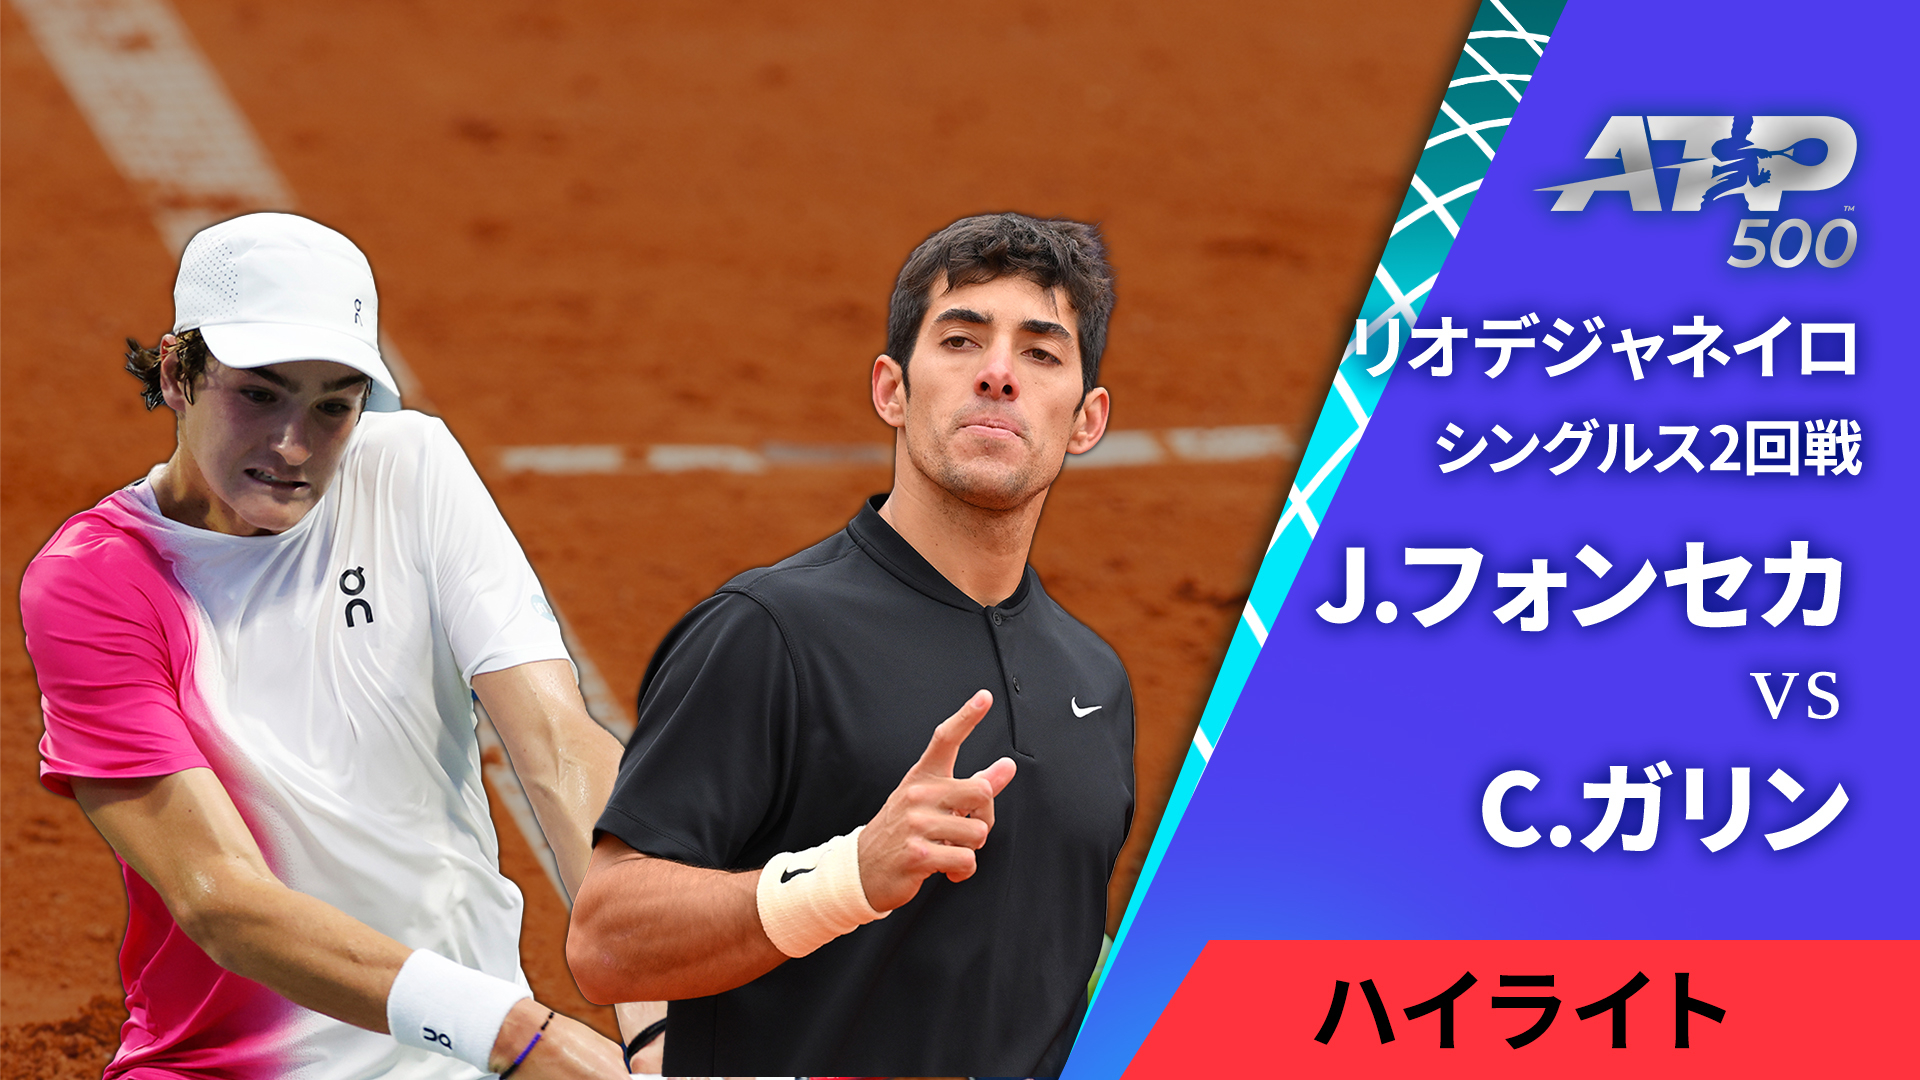 男子テニスATPツアー2024 500 リオデジャネイロ シングルス2回戦 J.フォンセカ(BRA) vs C.ガリン(CHI)